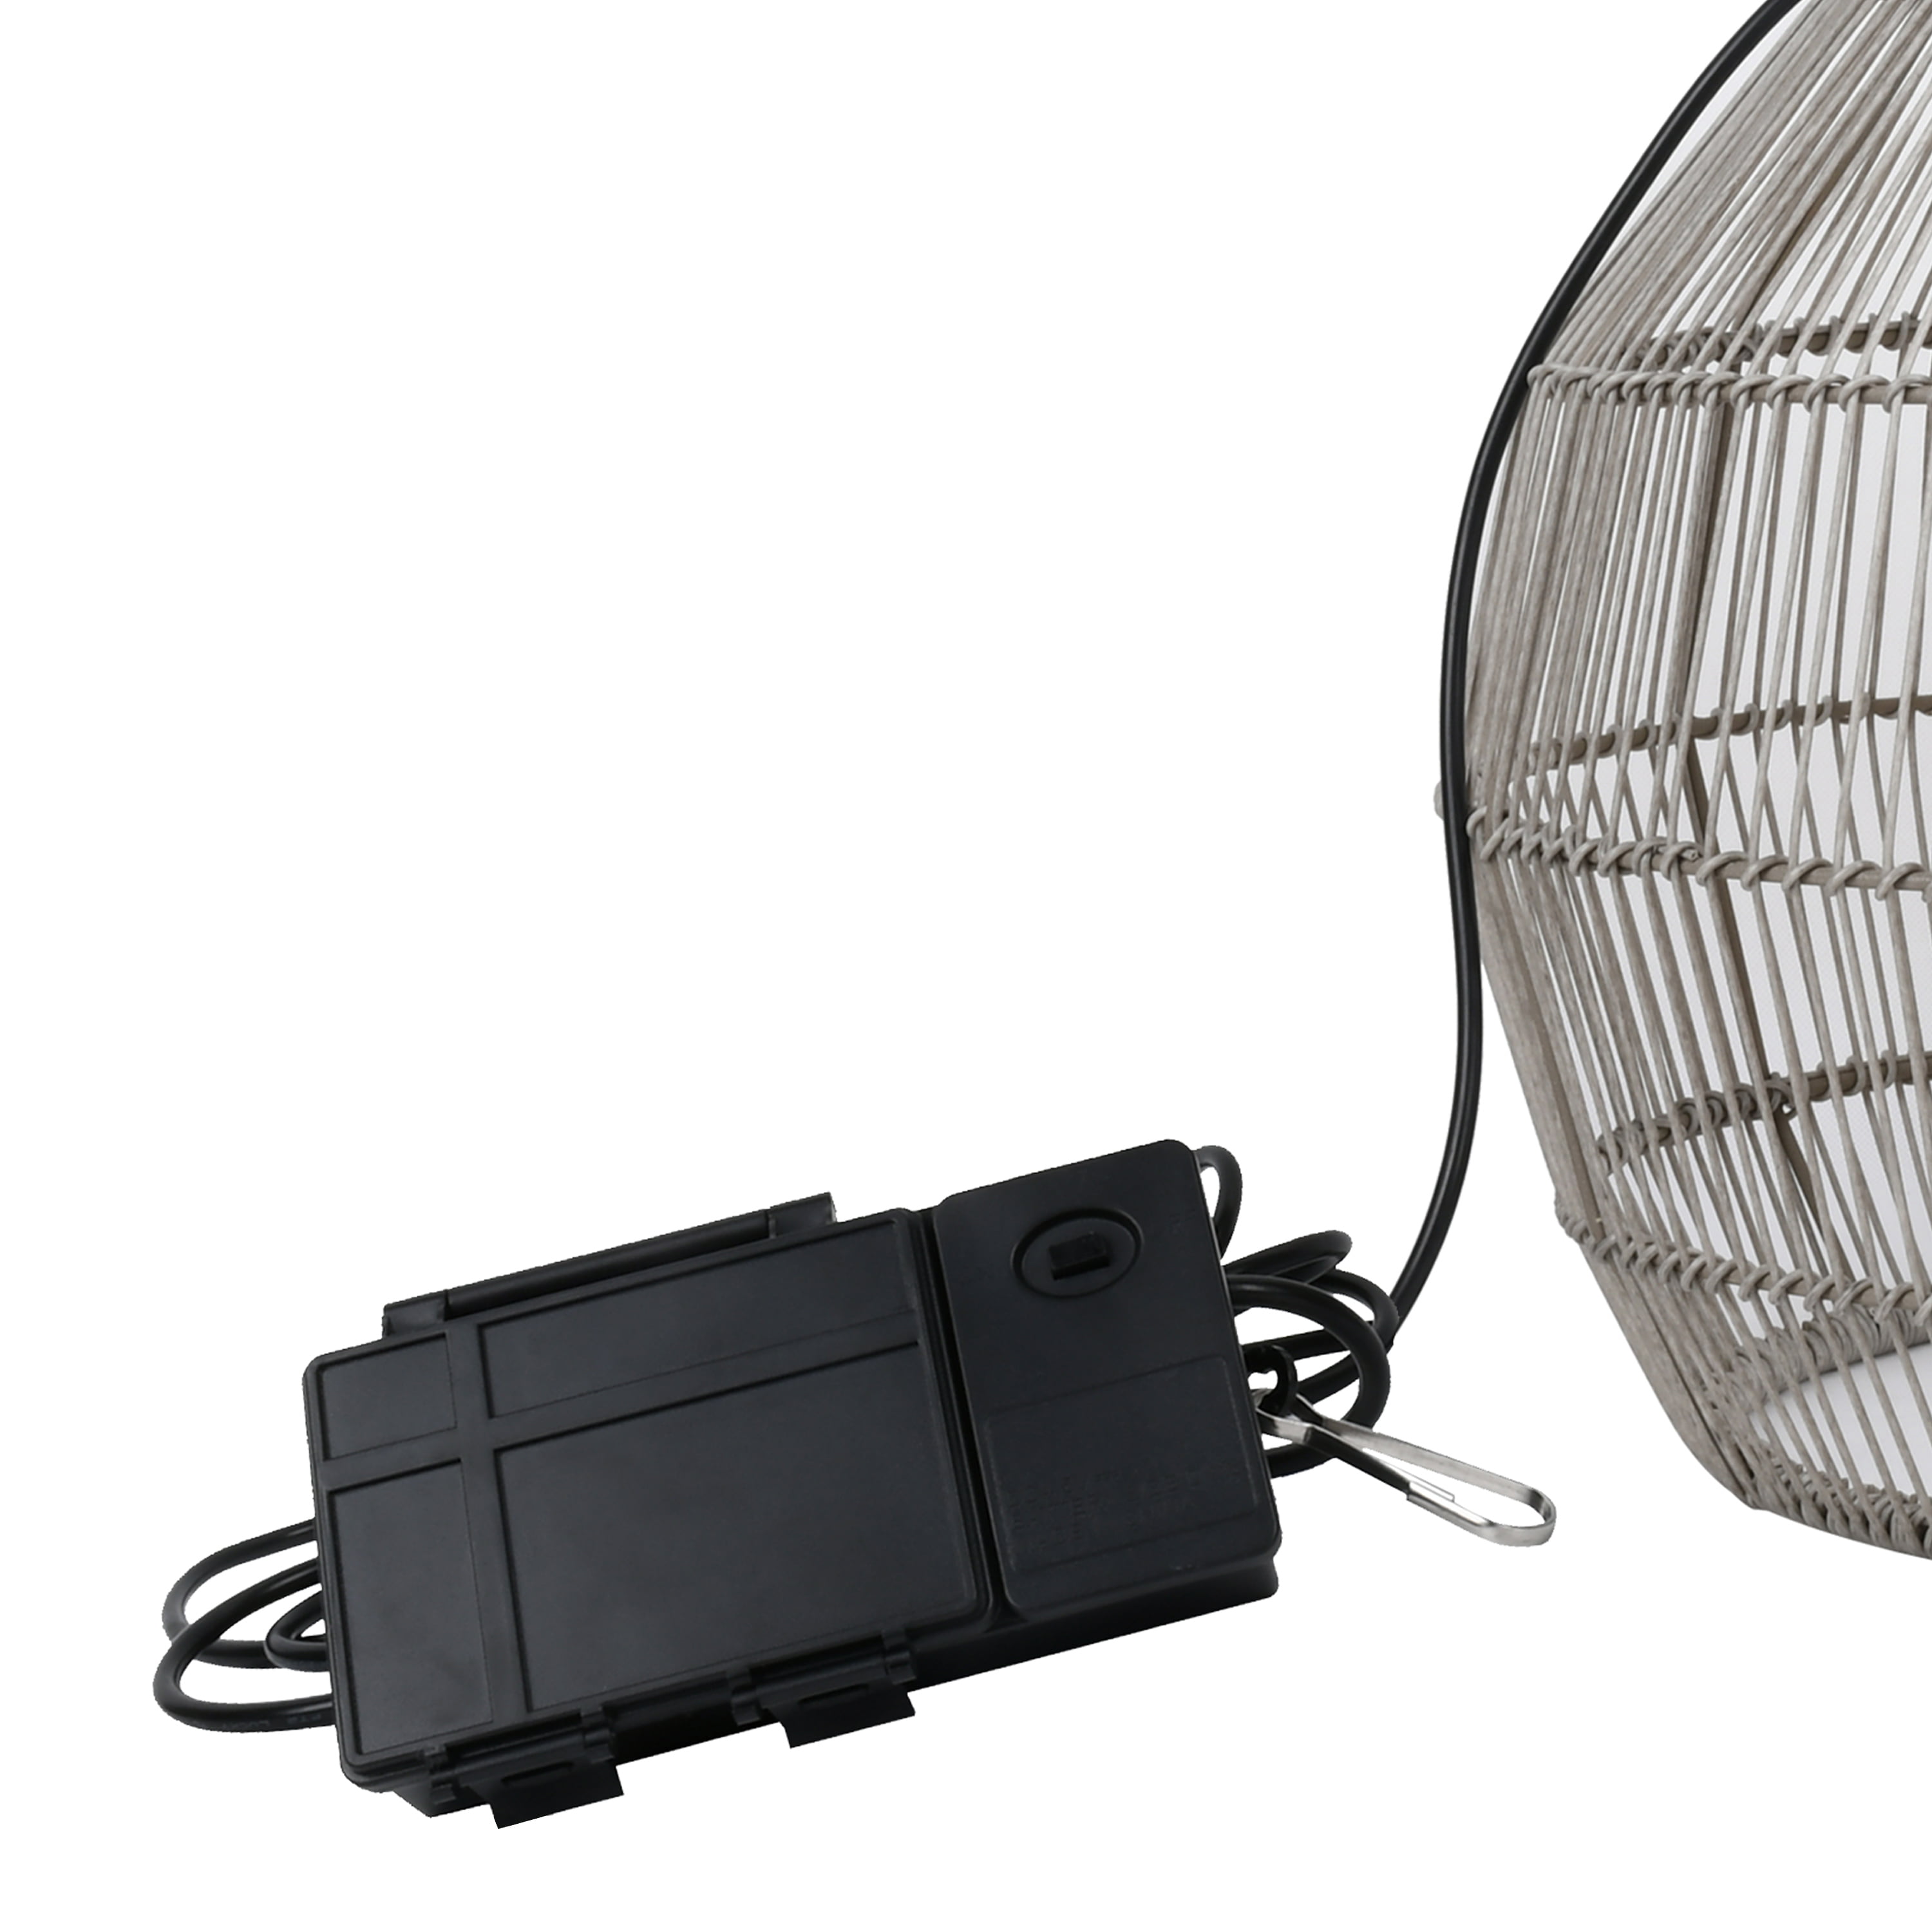 BrightEase Set of 5 Battery Powered Indoor/Outdoor Hang Lights